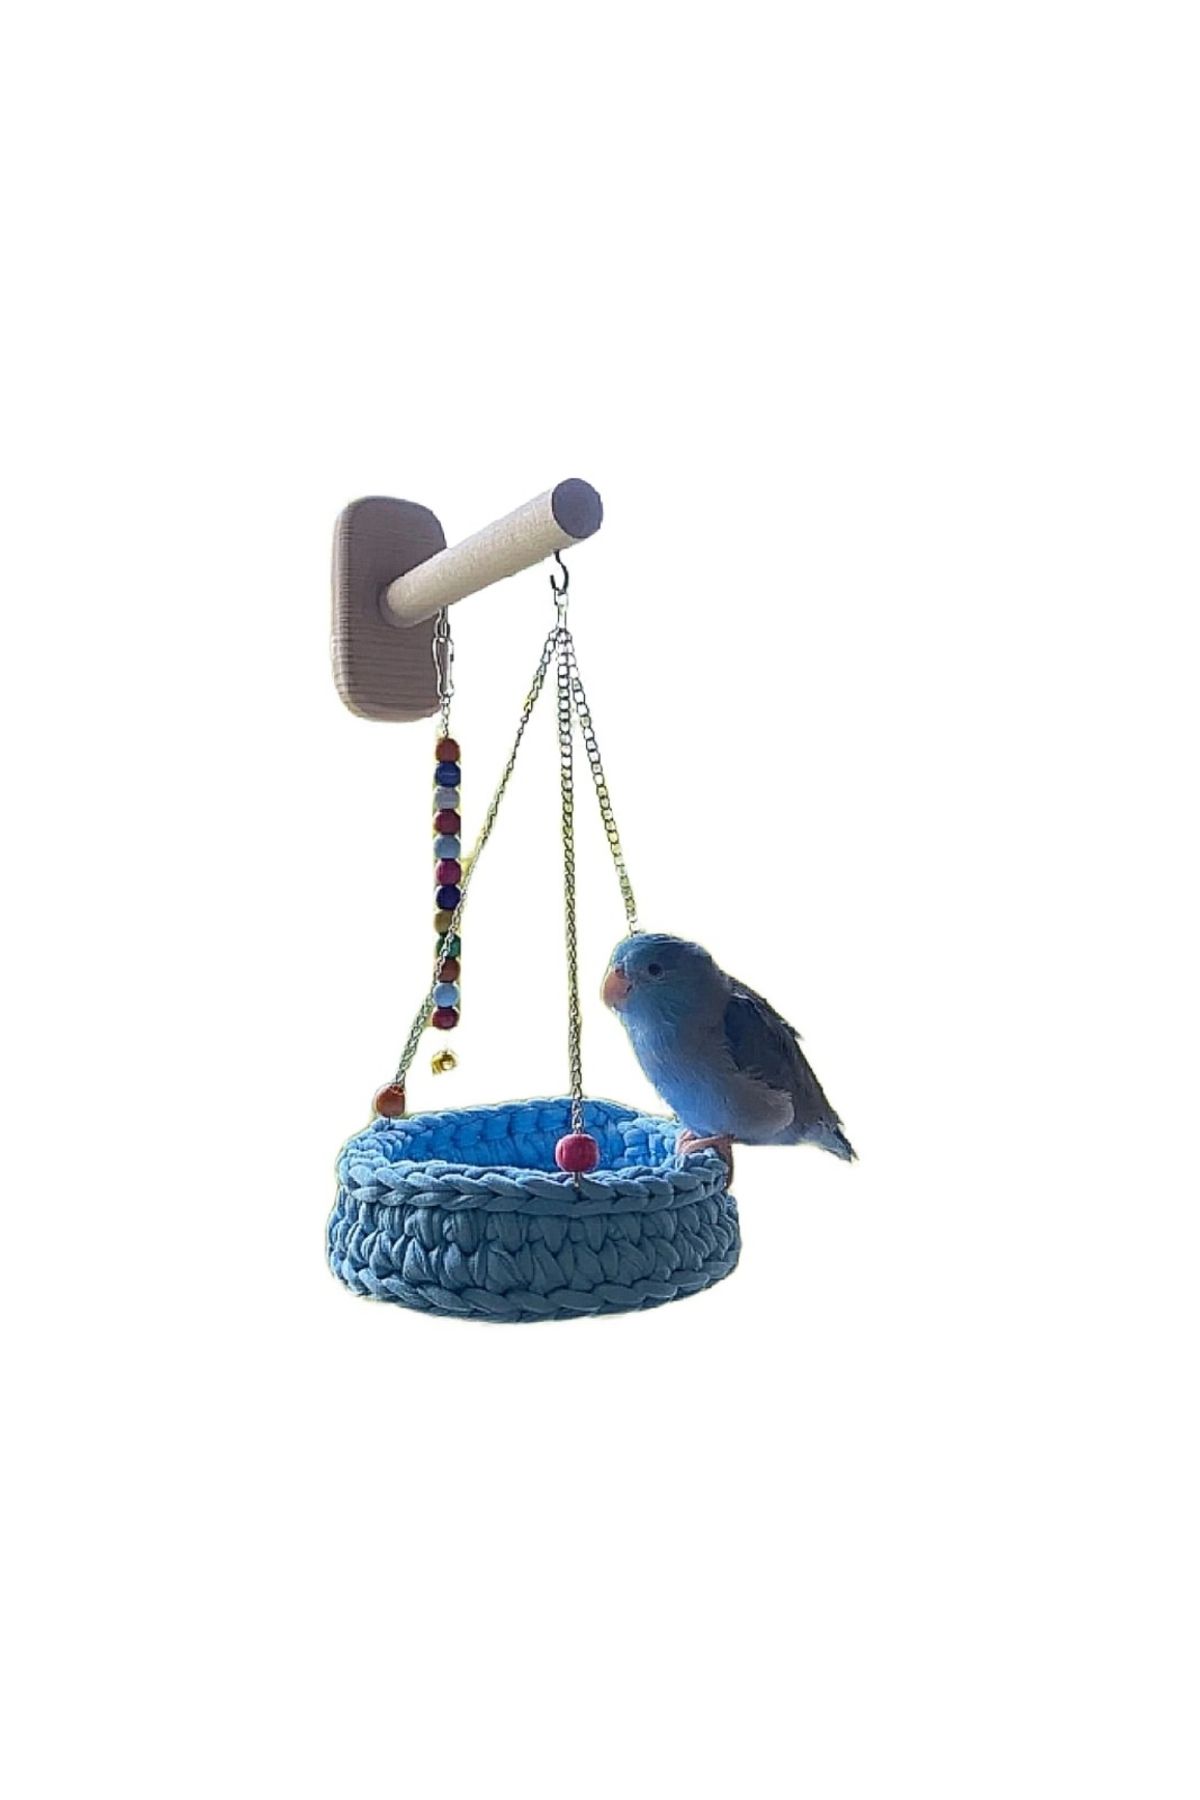 Kor kuş salıncağı zilli salıncak kuş hamağı kuş kafesi için kuş hamağı kuş için oyuncak 11x11cm